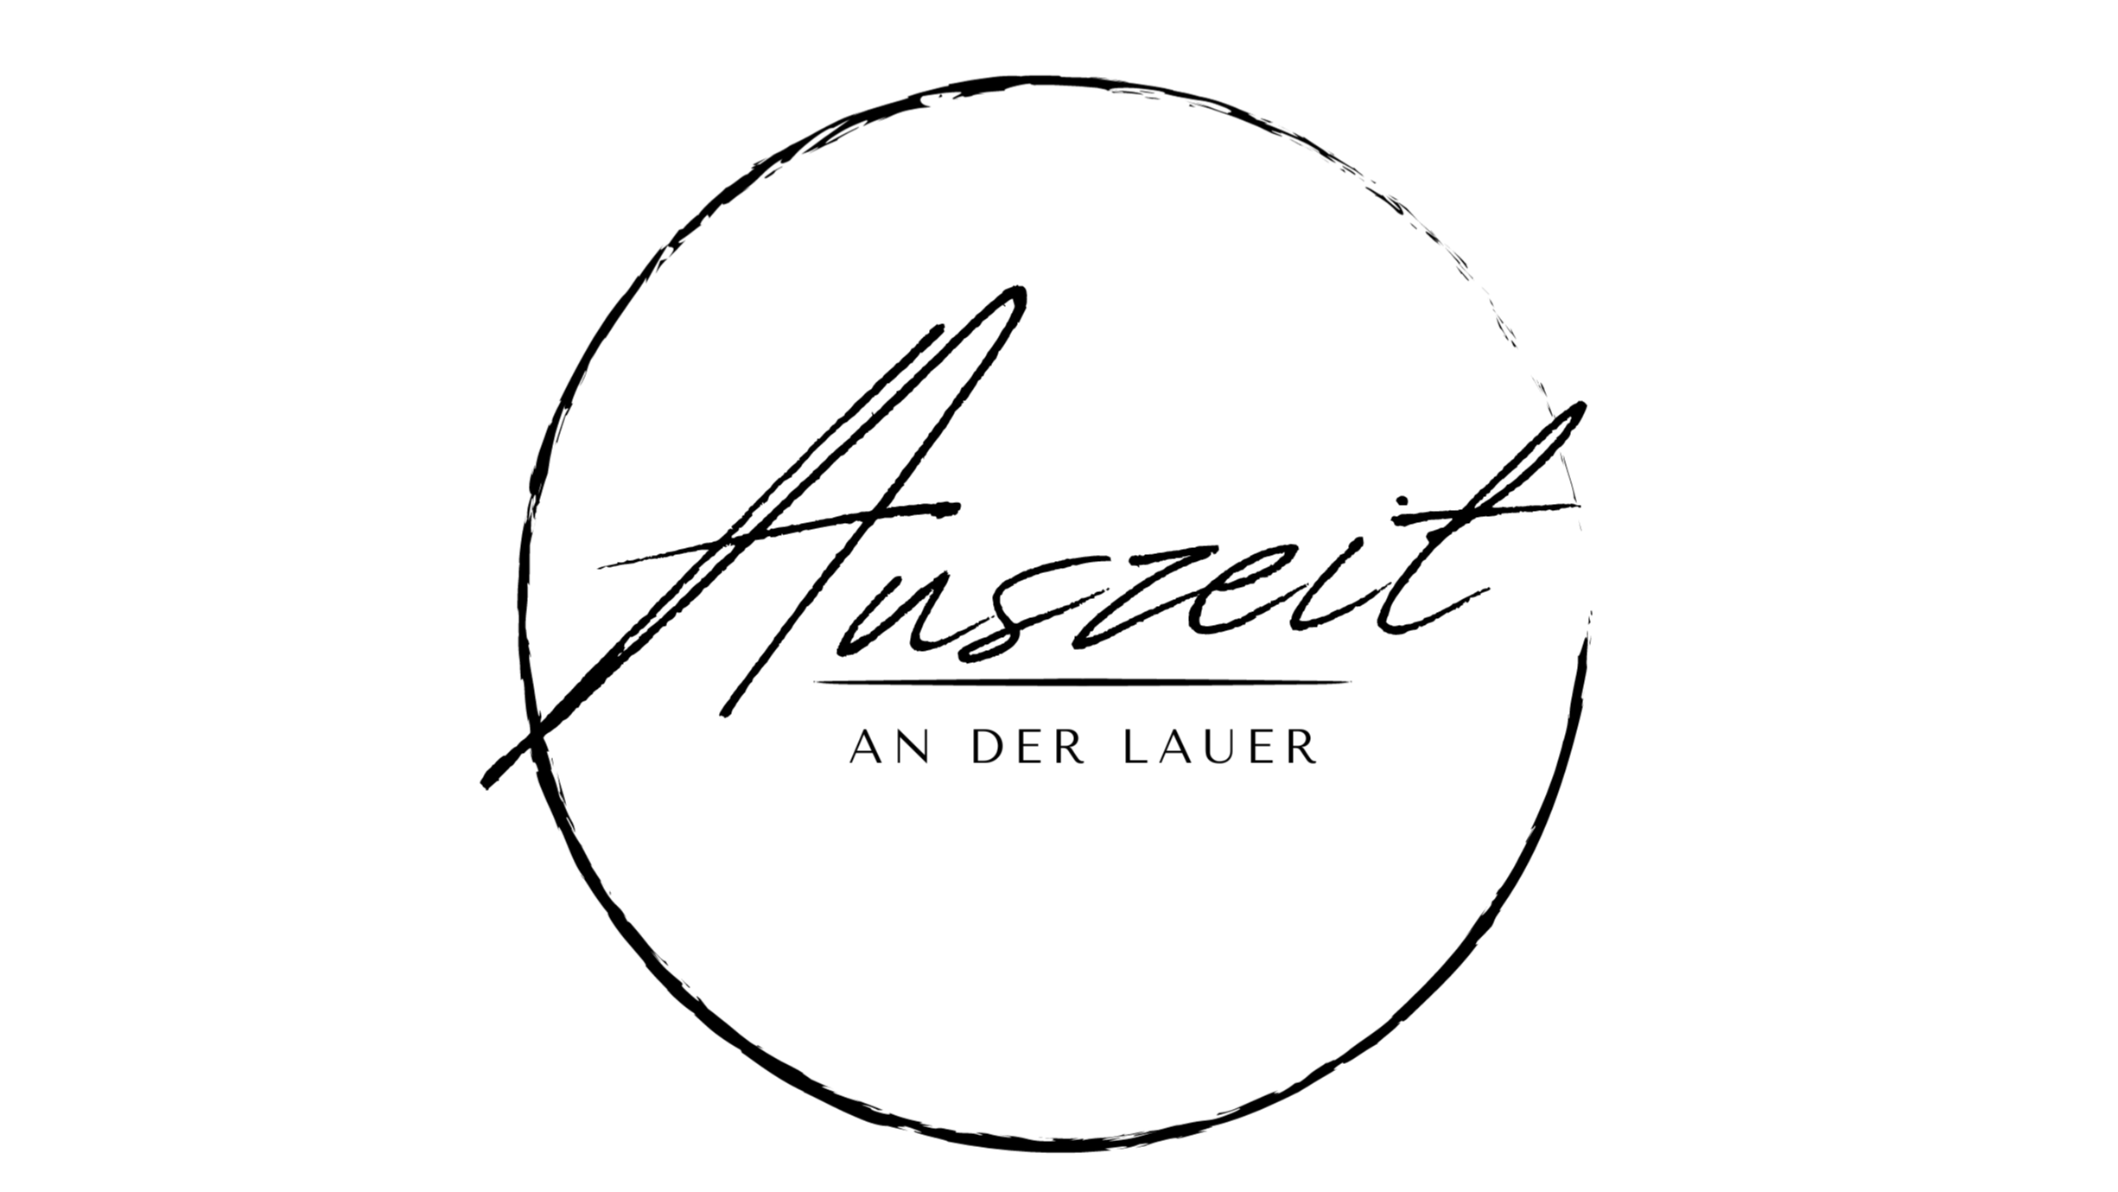 Auszeit An der Lauer Leipzig - Restaurant - Leipzig - 0341 60421185 Germany | ShowMeLocal.com